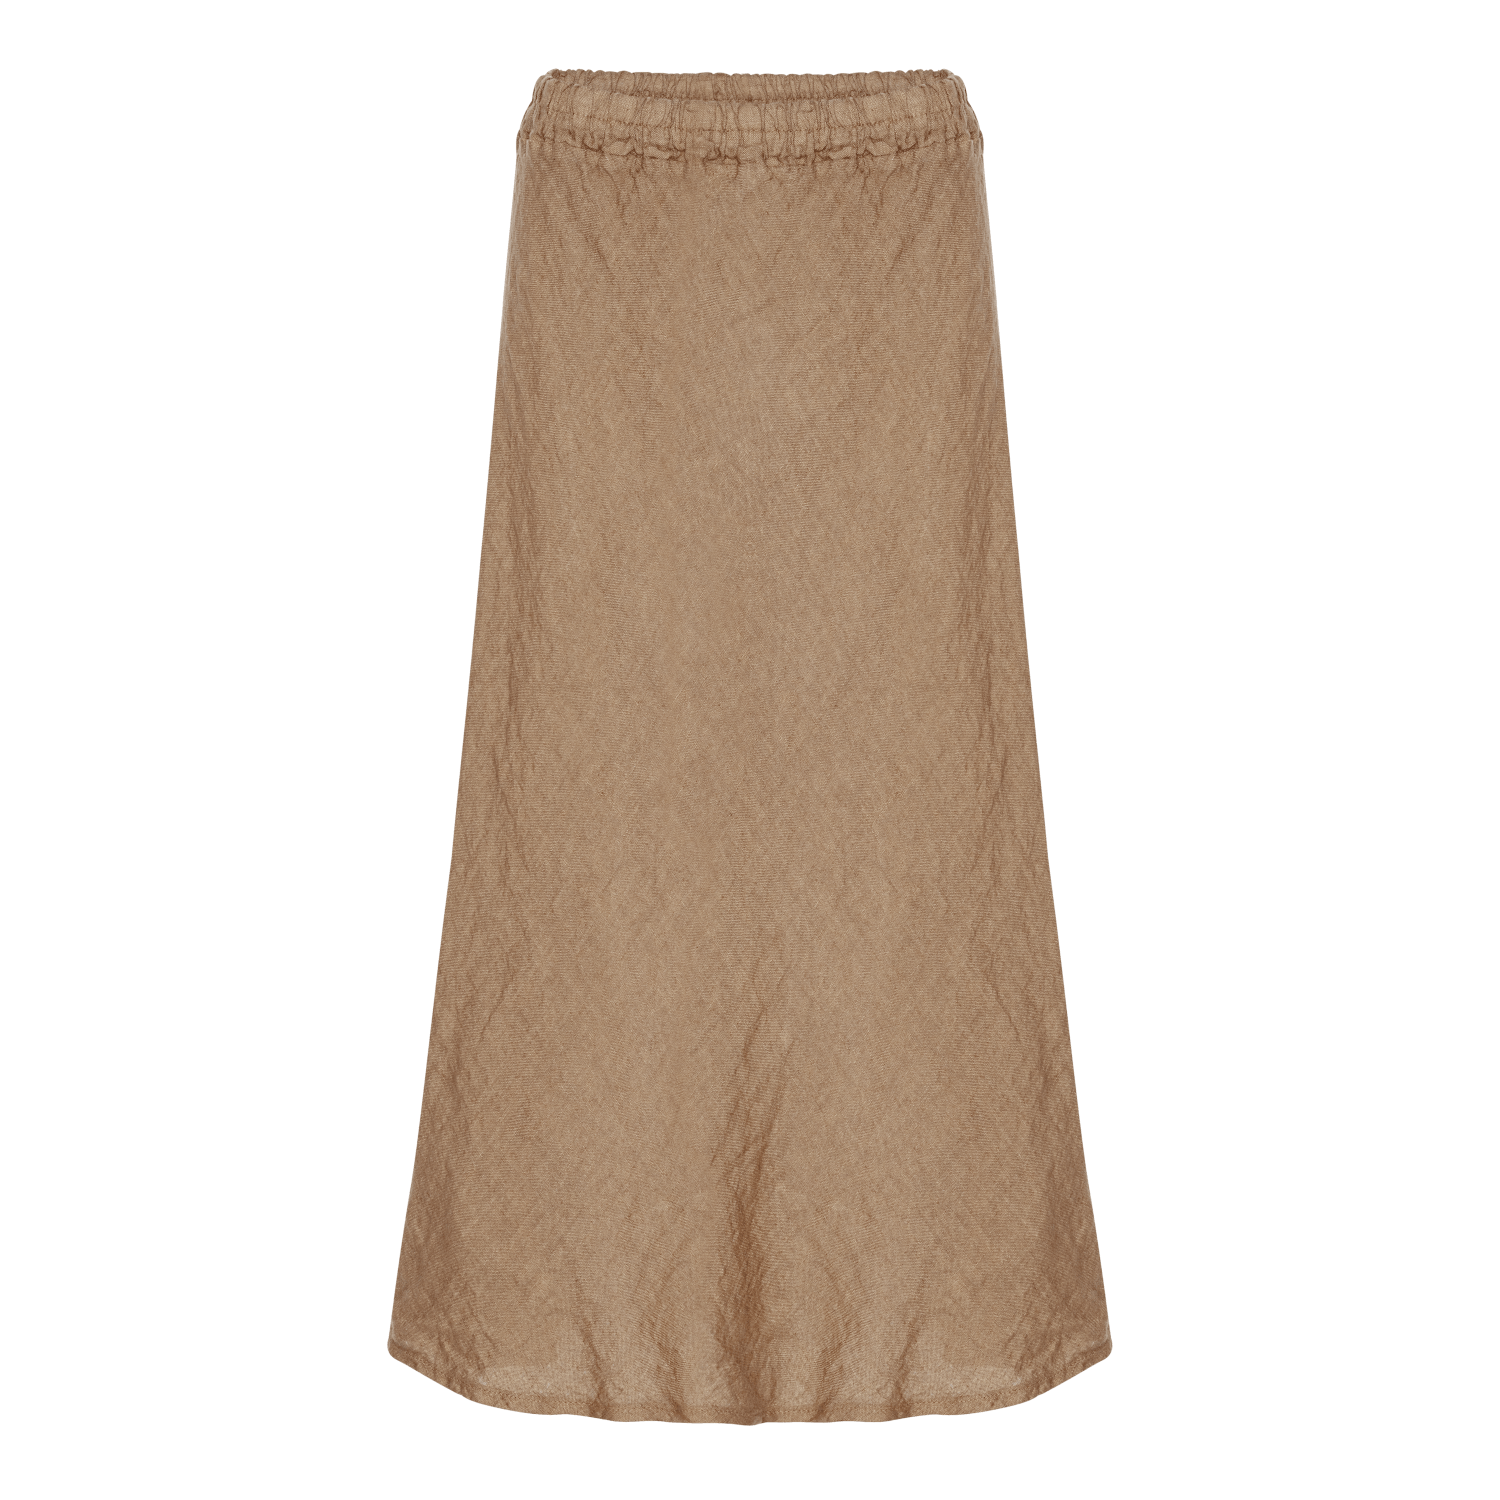 Linen Skirt - Camel - Amaze Cph - Camel - One Size